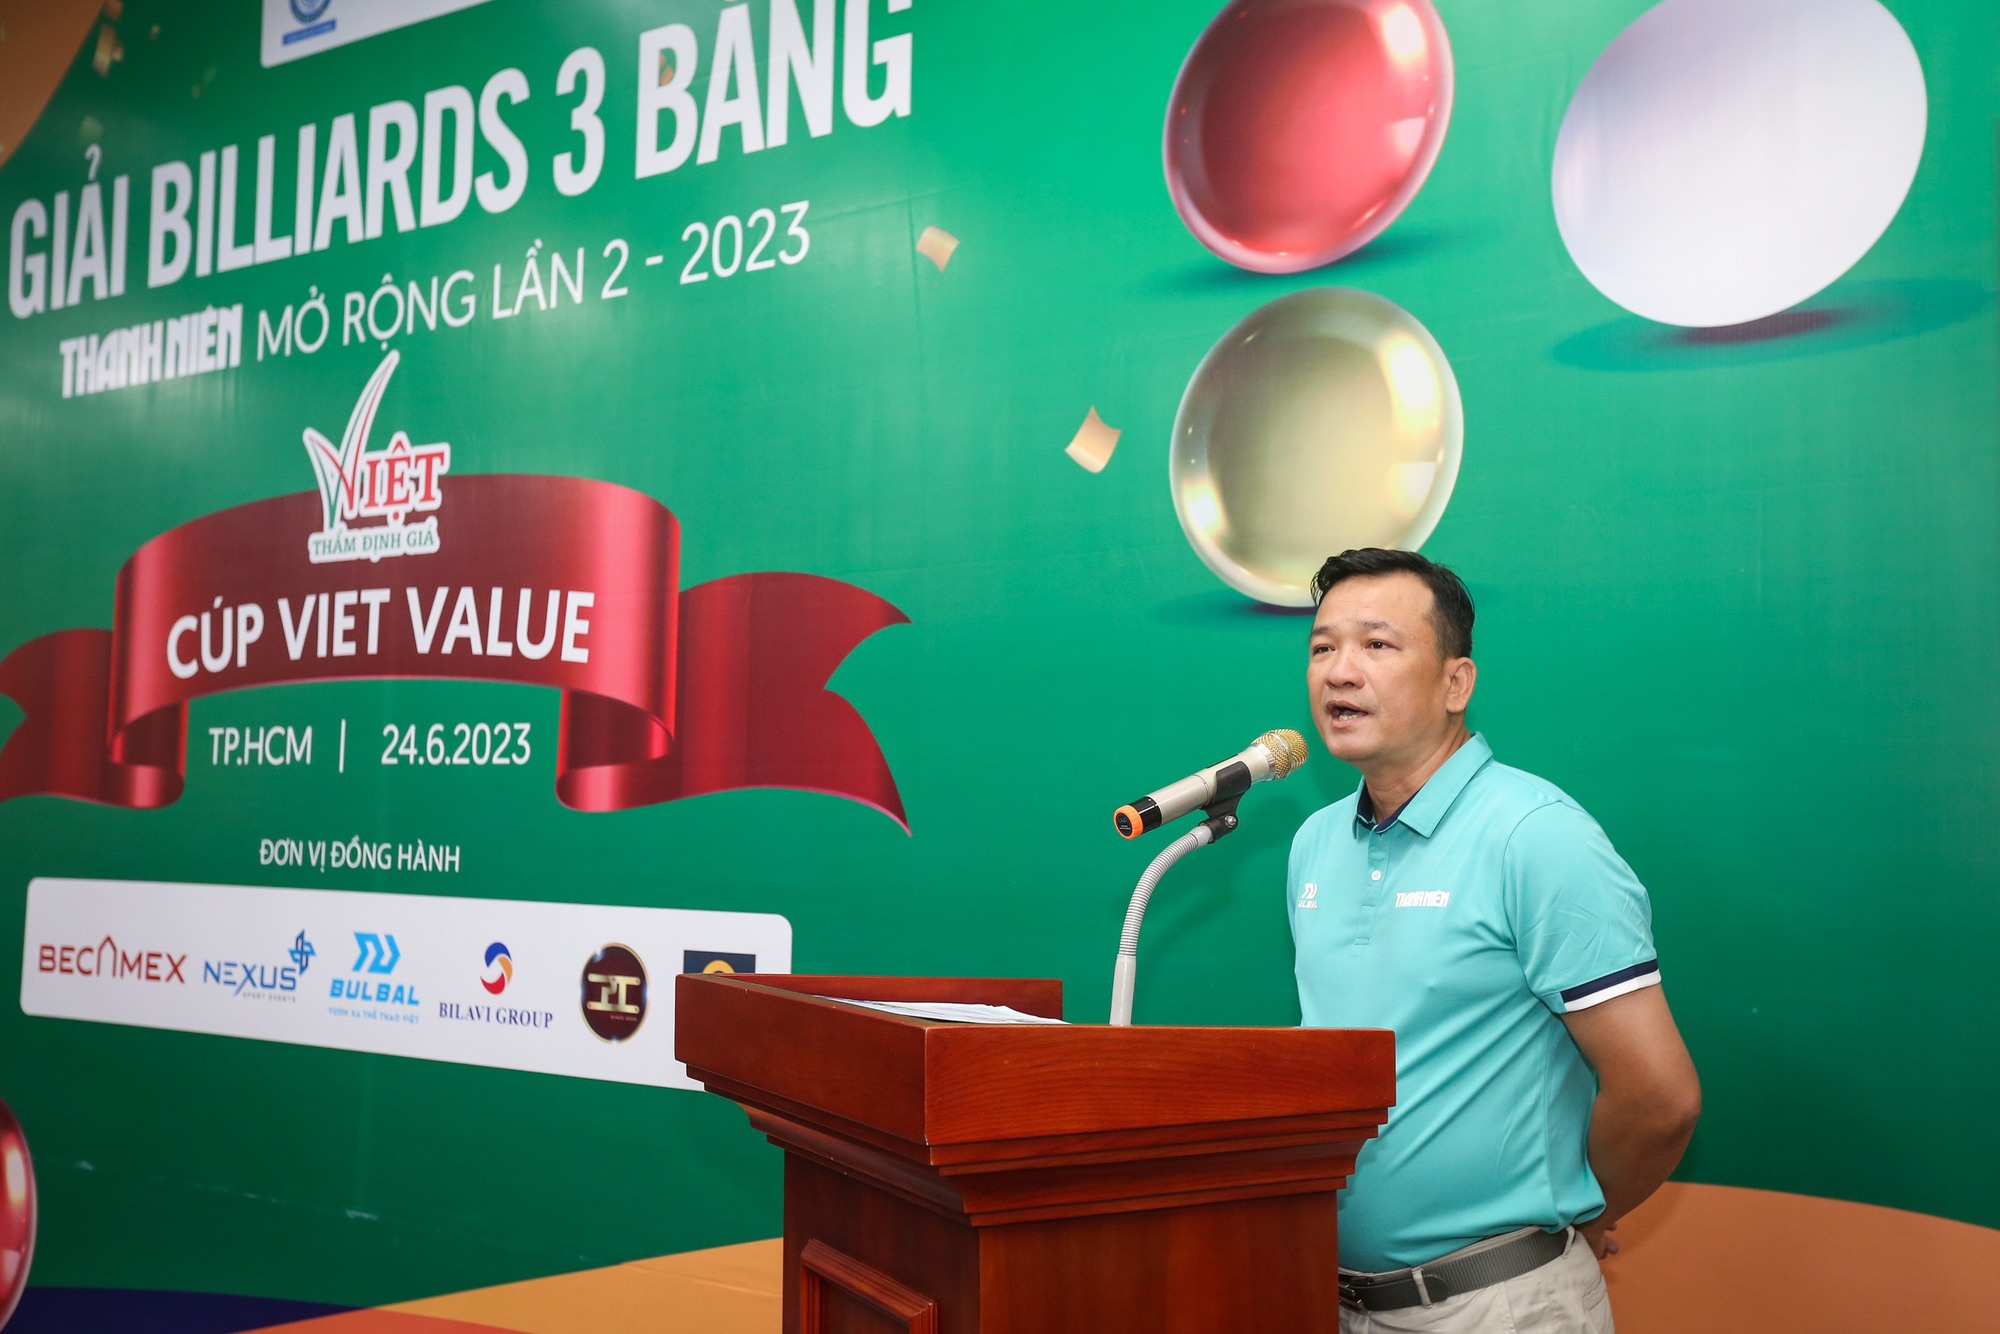 Nguyễn Hoàng Yến Nhi hứa hẹn bùng nổ tại giải billiards  3 băng Thanh Niên - Ảnh 3.